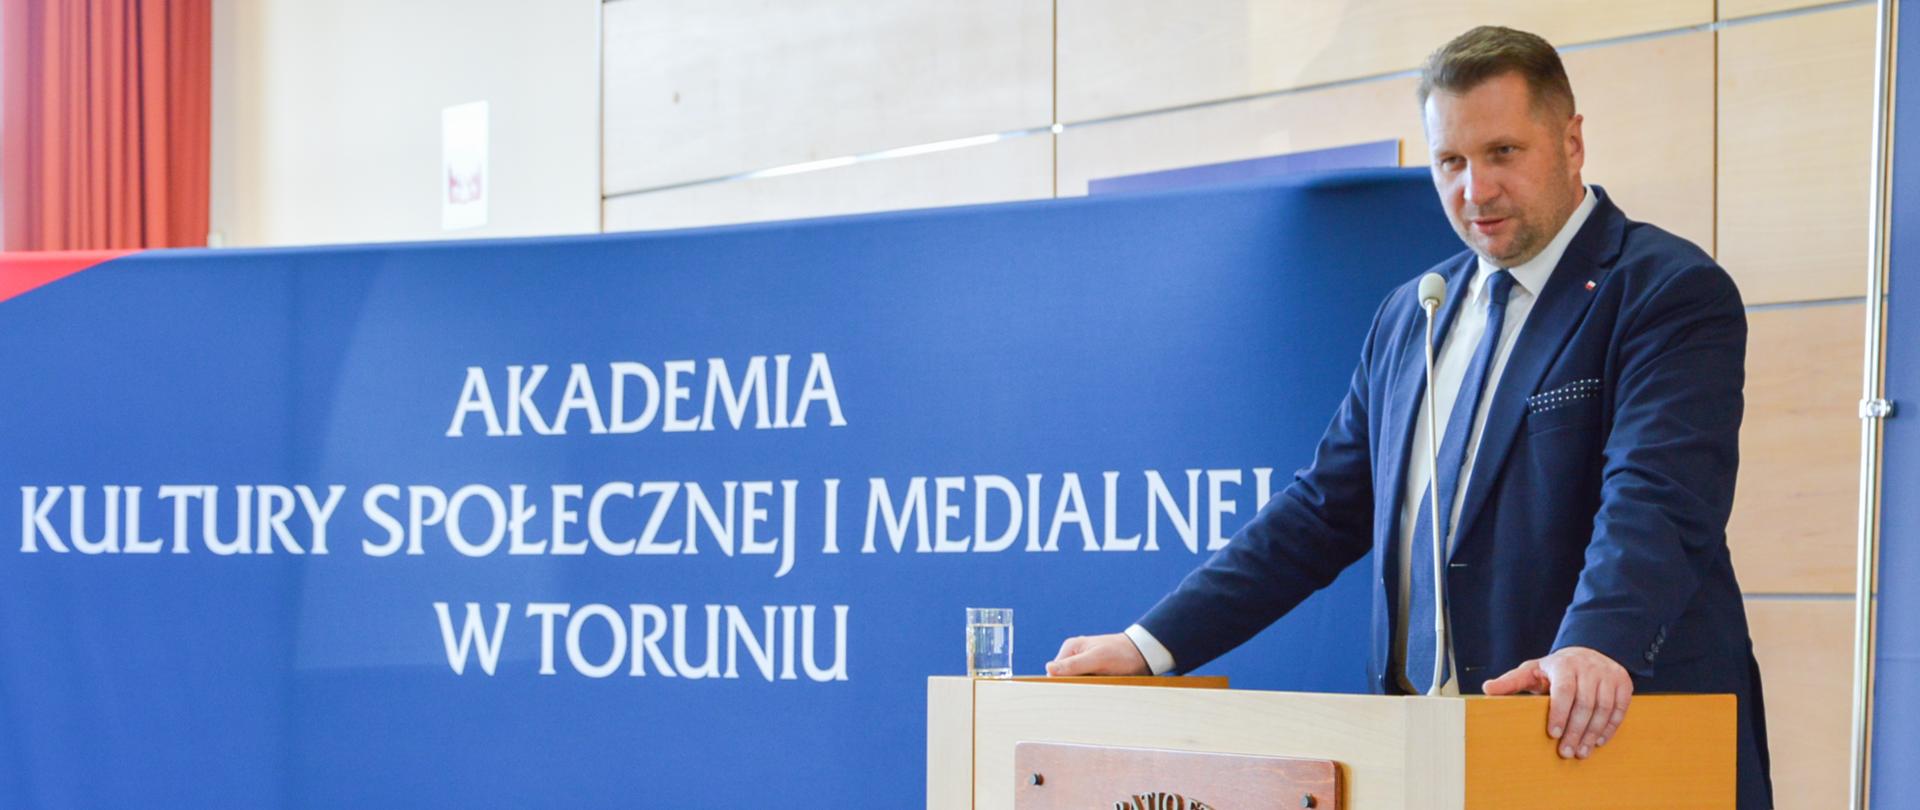 Minister Przemysław Czarnek przemawia podczas wykładu. Stoi przy mównicy. Za sobą ma baner z napisem Akademia Kultury Społecznej i Medialnej w Toruniu